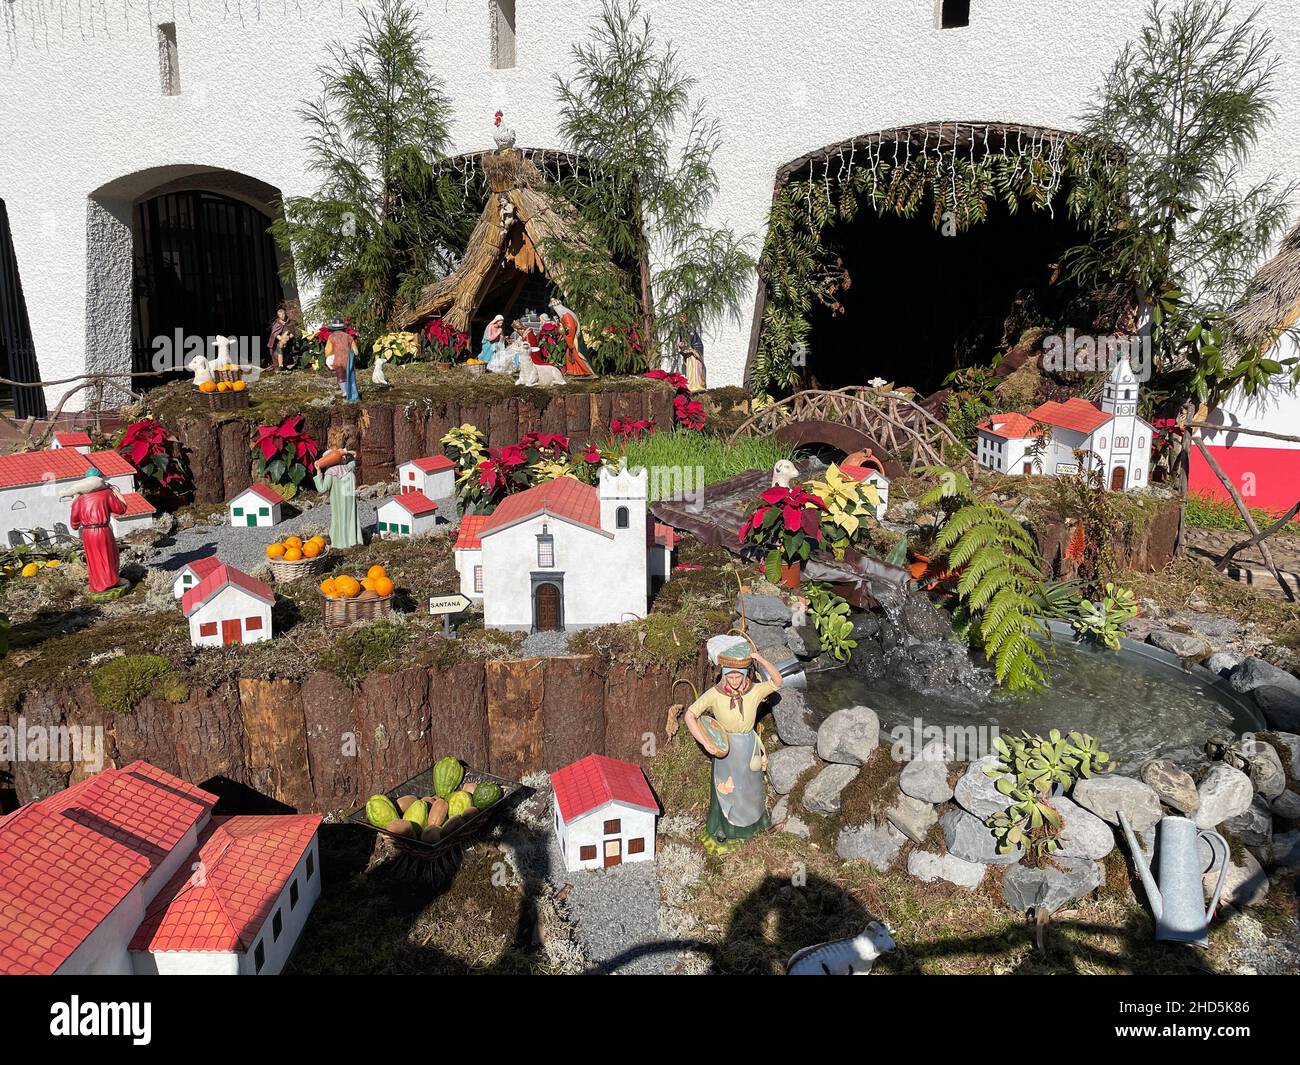 SANTANA, Madeira. Zu den weihnachtlichen Vorführungen in der örtlichen Kirche gehören Modelle der traditionellen A-Rahmen-Häuser. Foto: Tony Gale Stockfoto